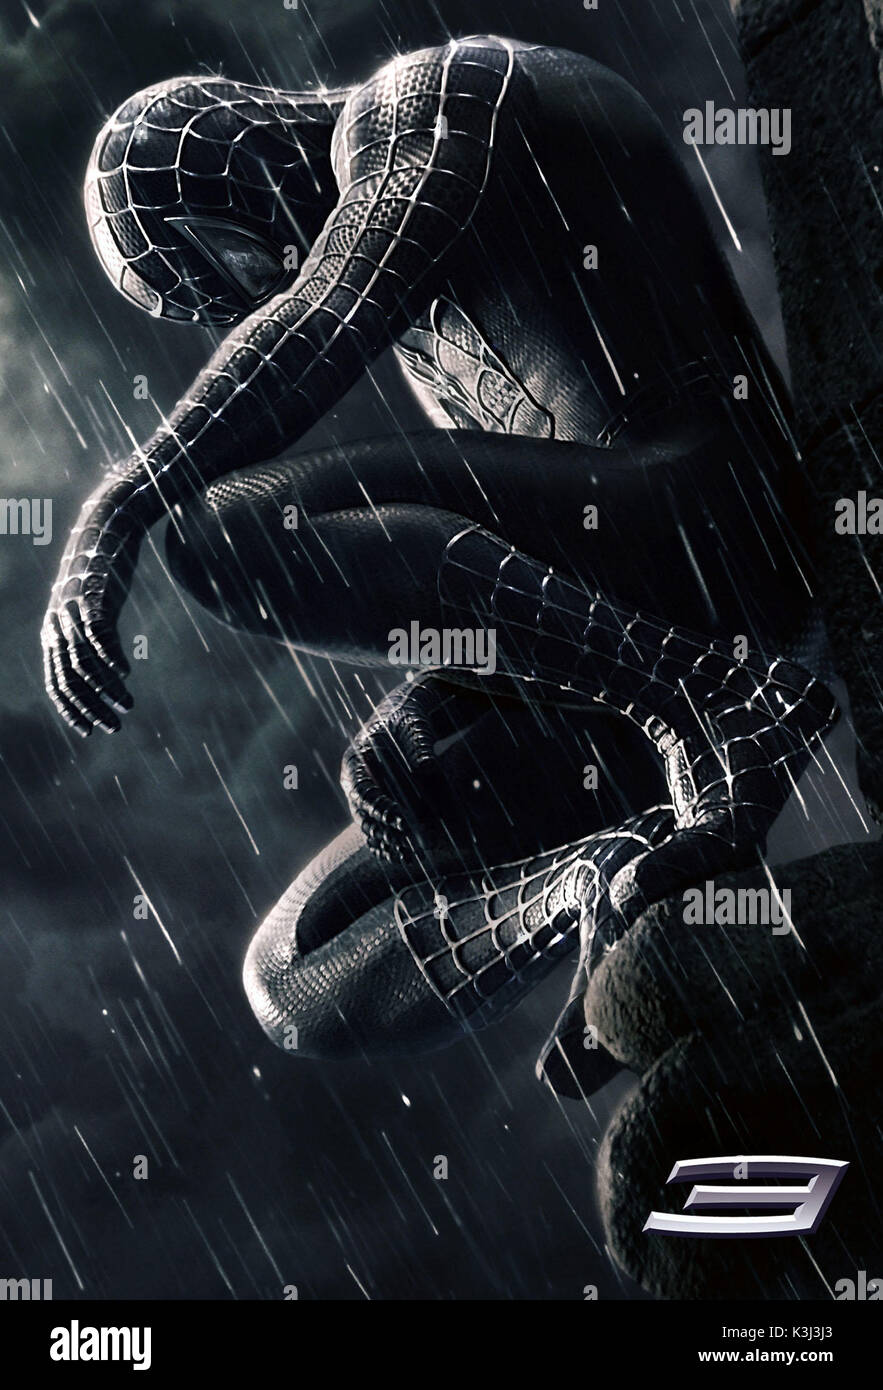 Spider-Man 3 el uso de la imagen debe ser acompañada con el siguiente  título. El título confirma que Spiderman con traje negro es lo que se  entiende que no se trata de